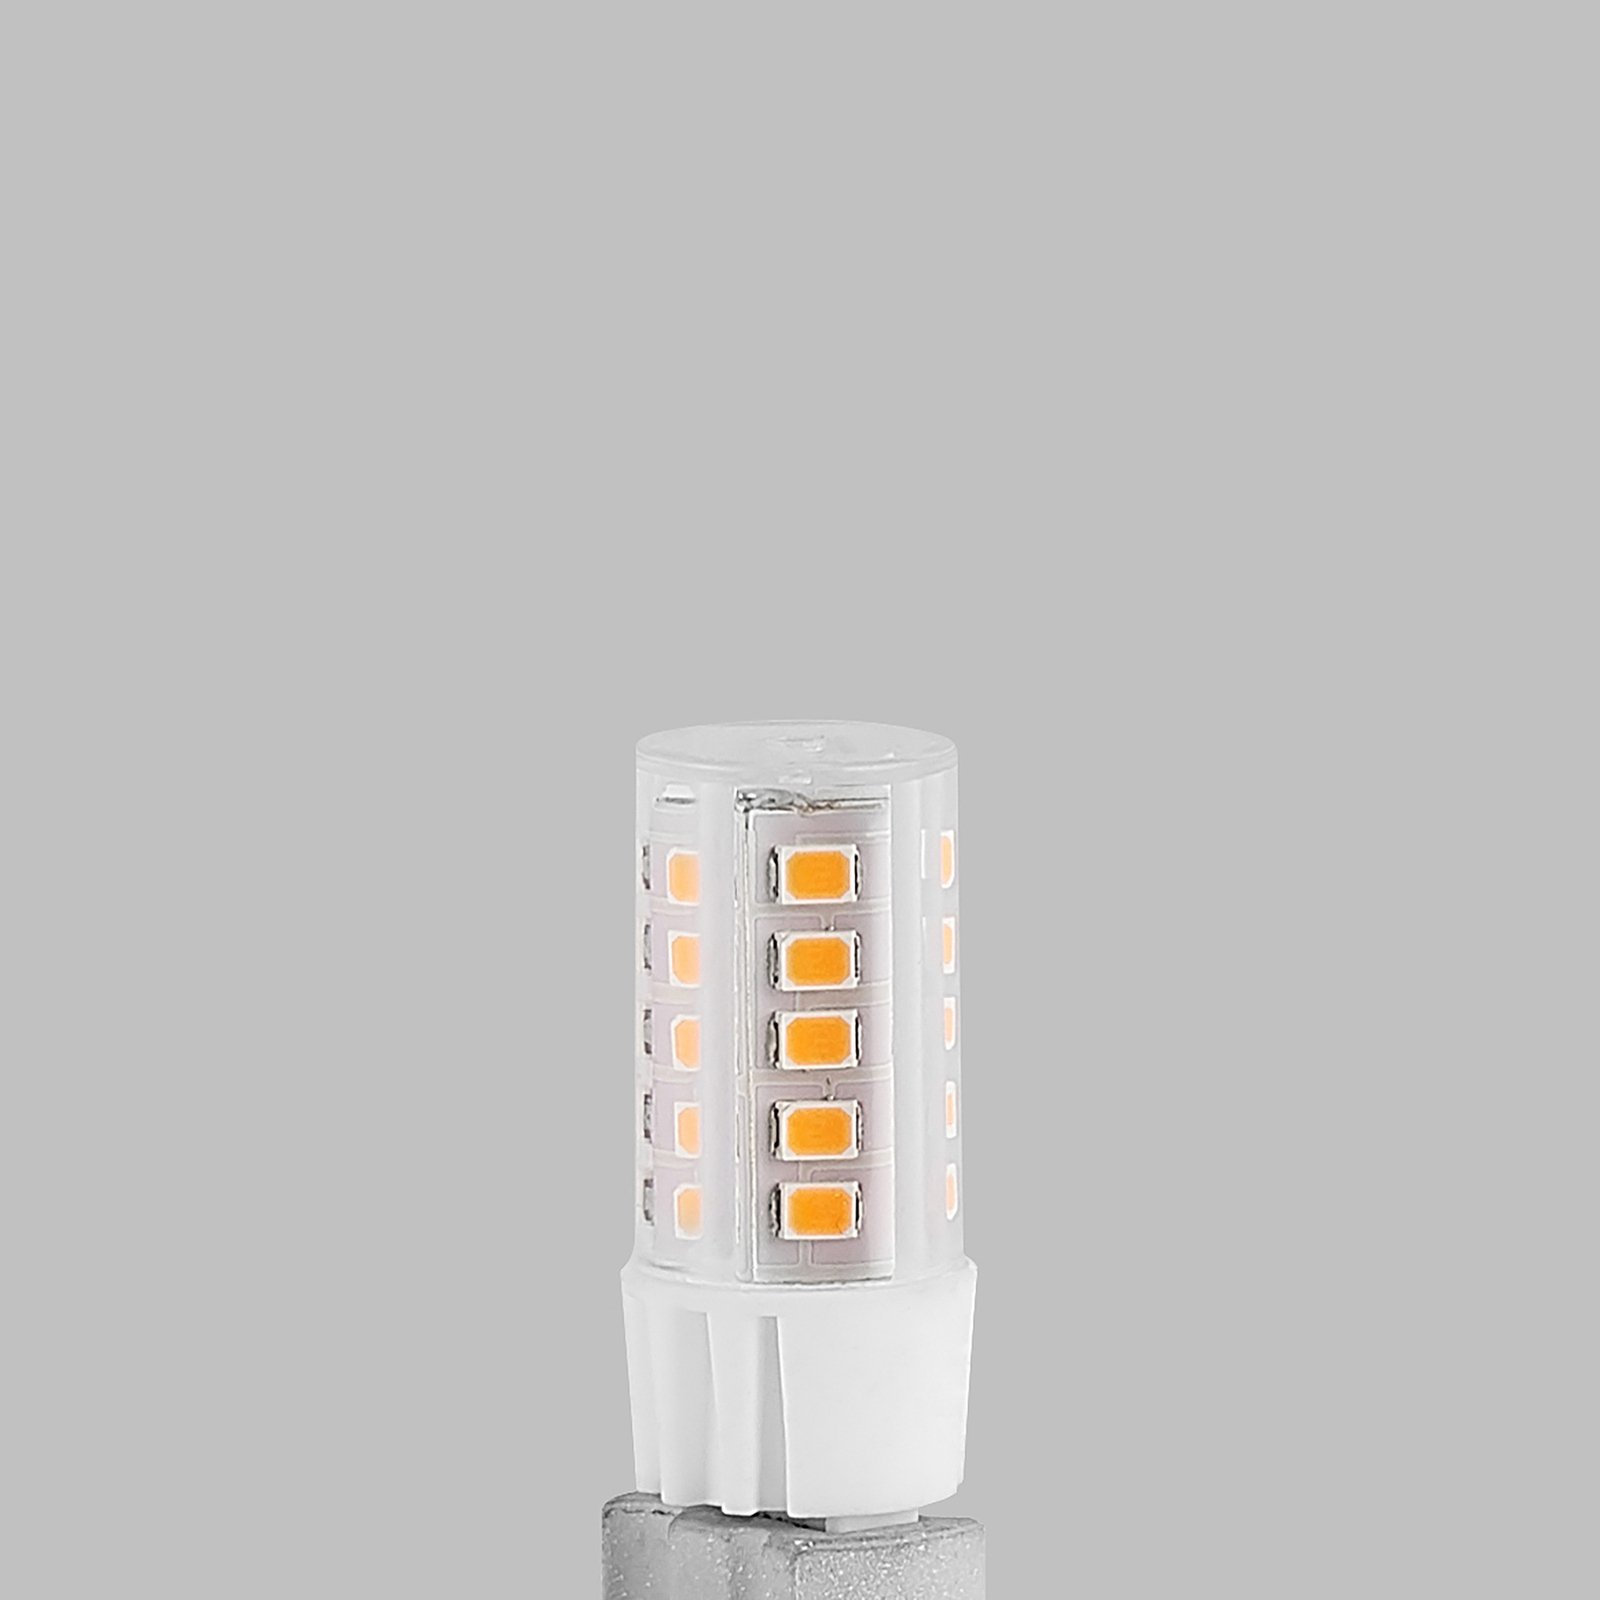 Arcchio LED s kolíkovou päticou G9 3,5W 827 6 ks